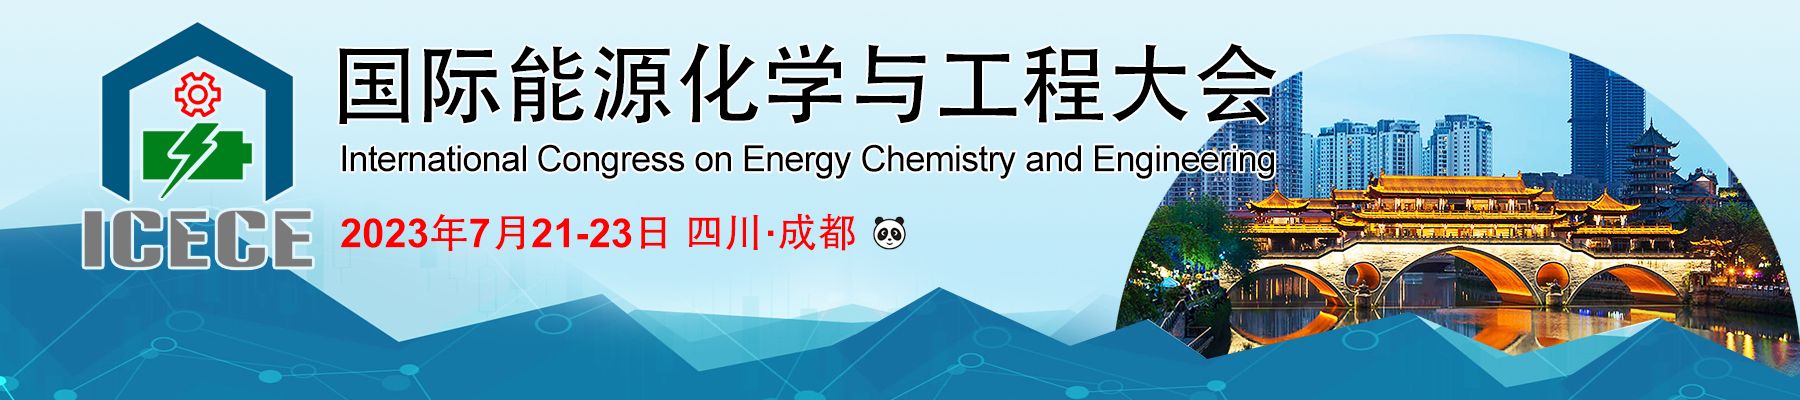 2023第三届国际能源化学与工程大会 (ICECE-2023)